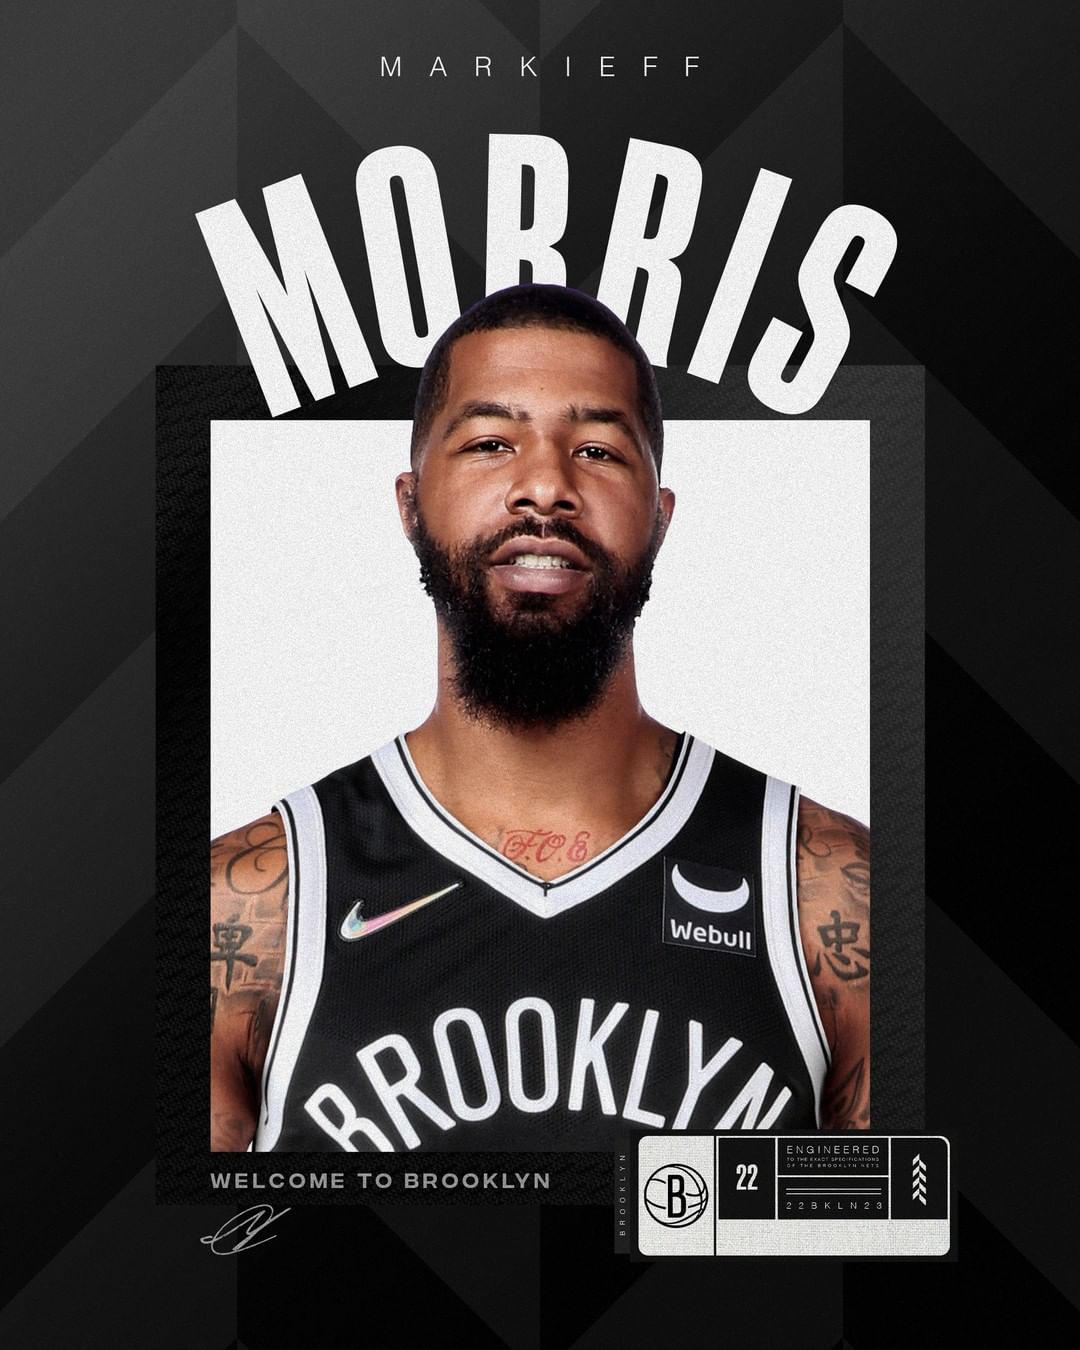 Brooklyn Nets - Welcome to Brooklyn, #keefmorris5